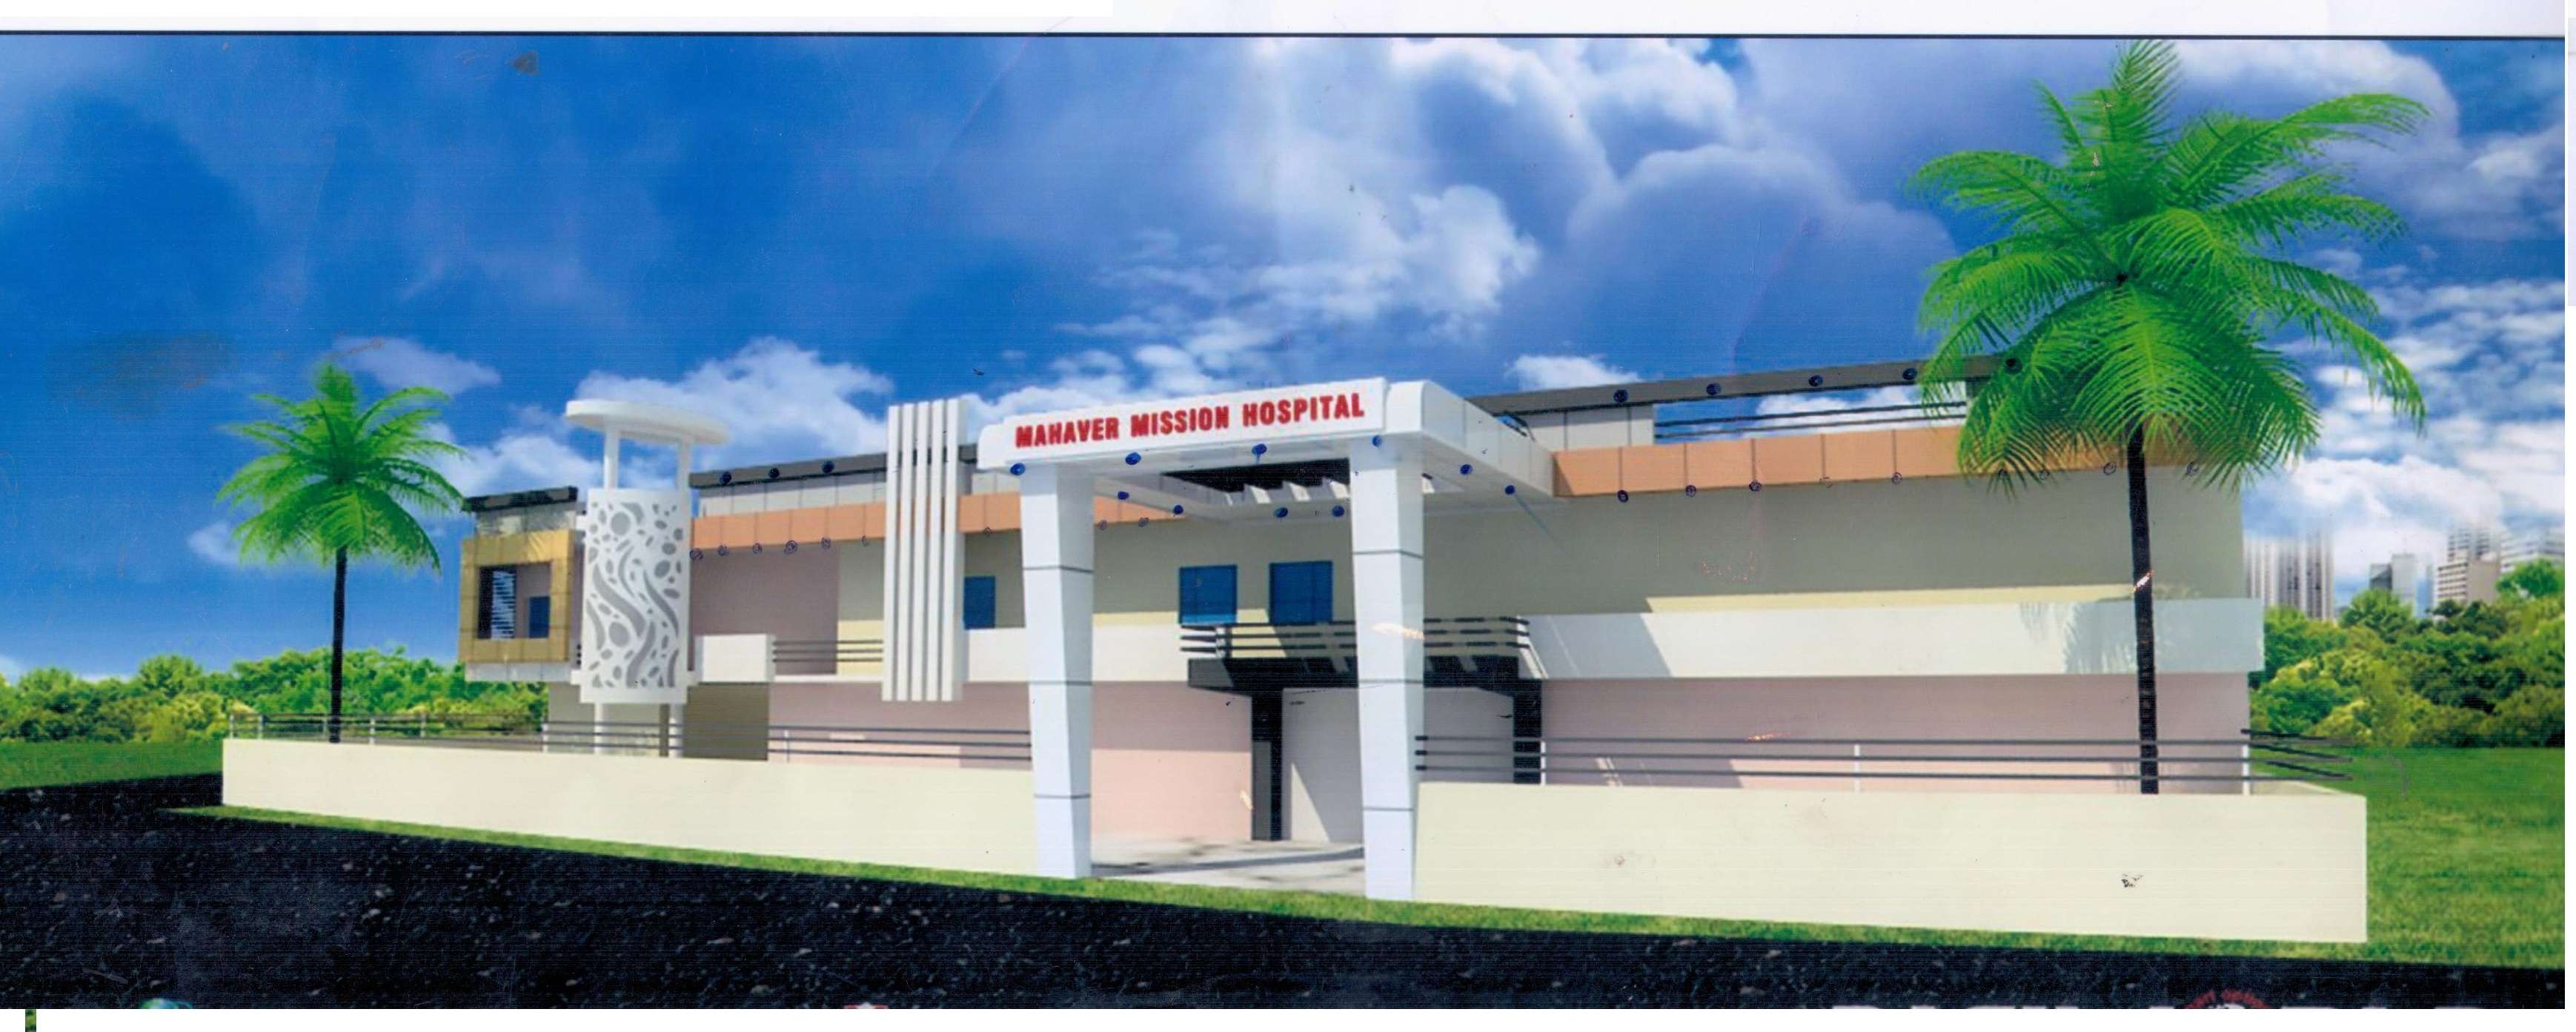 Mahaveer Mission Hospital